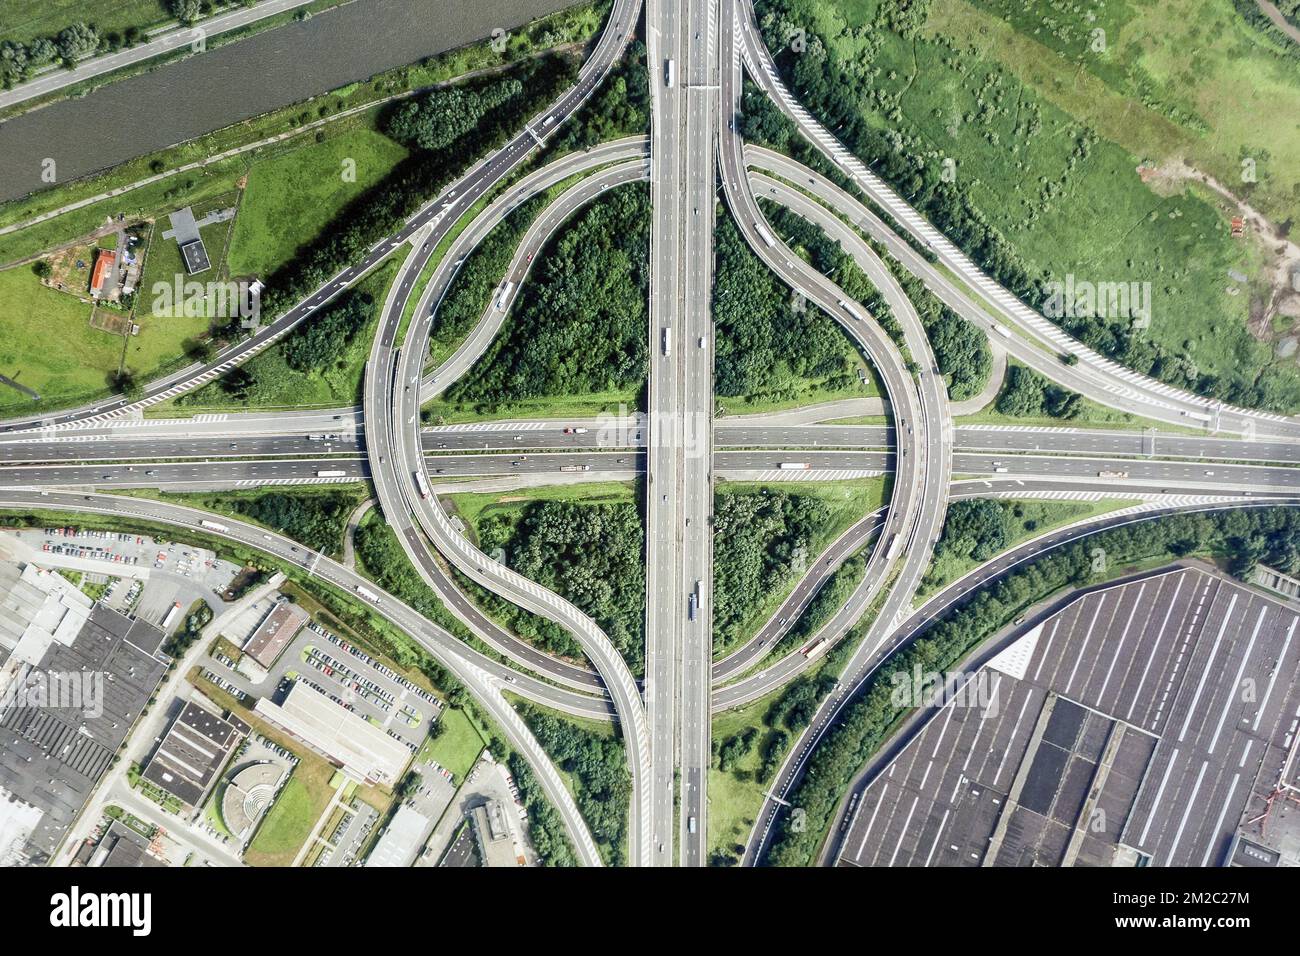 Luftaufnahme über Autobahnkreuz/Autobahnkreuz mit Zufahrtsstraßen zum Gewerbegebiet | Vue aérienne d'un echangeur Autoroutier 07/01/2018 Stockfoto